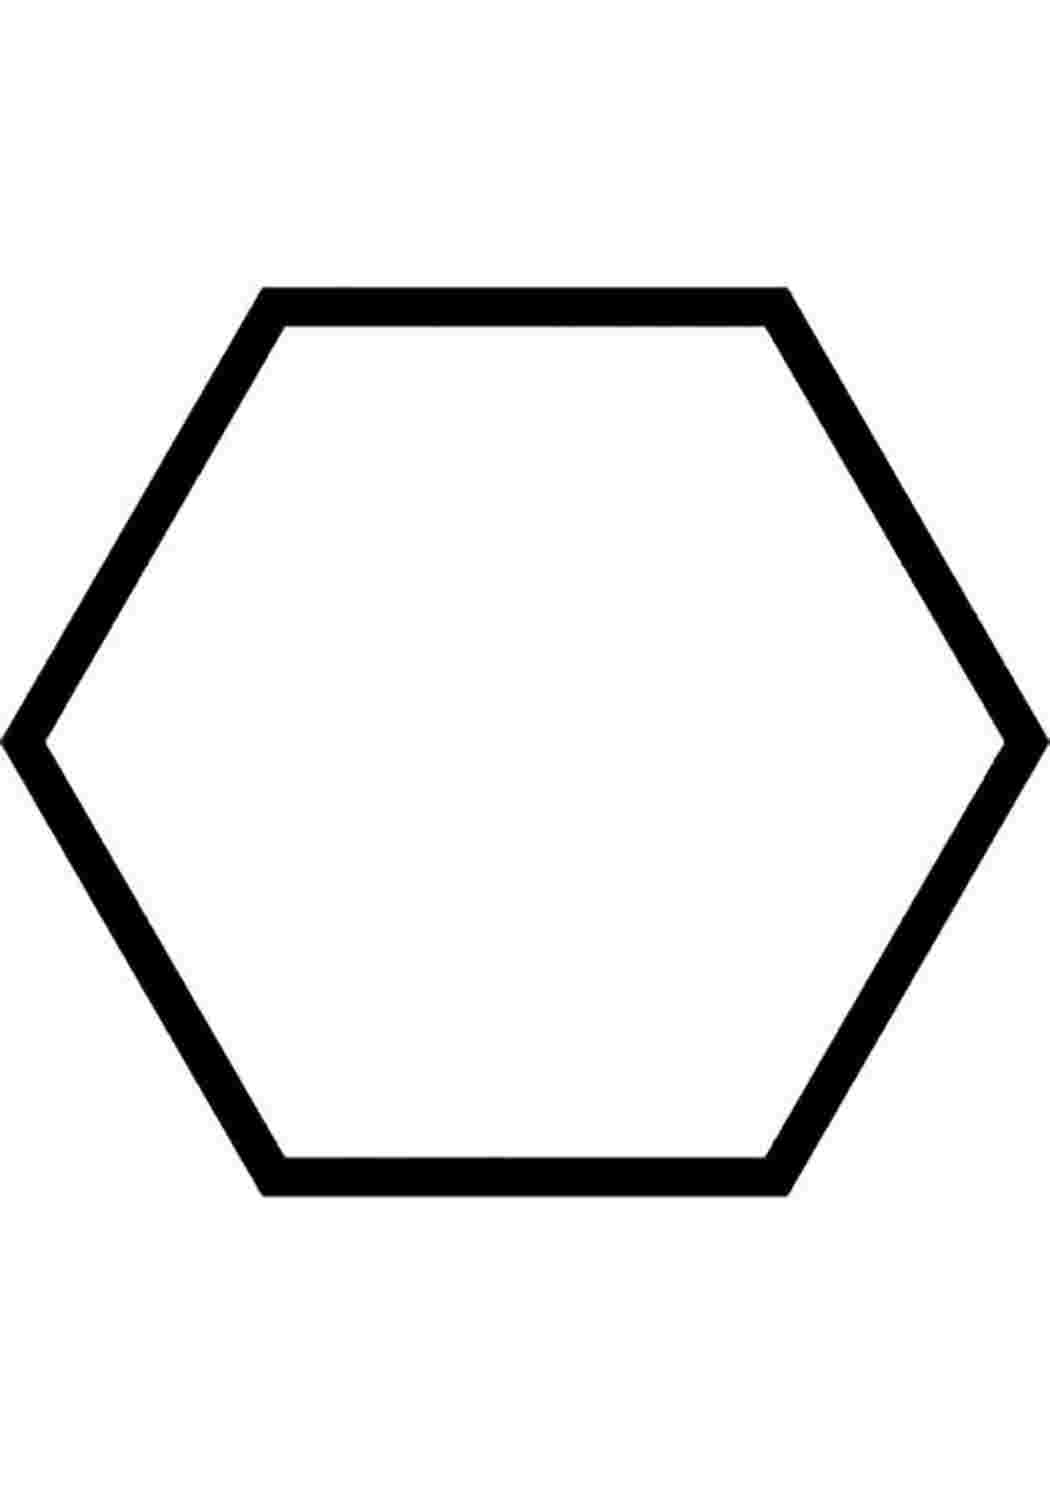 Правильный шестиугольник фото